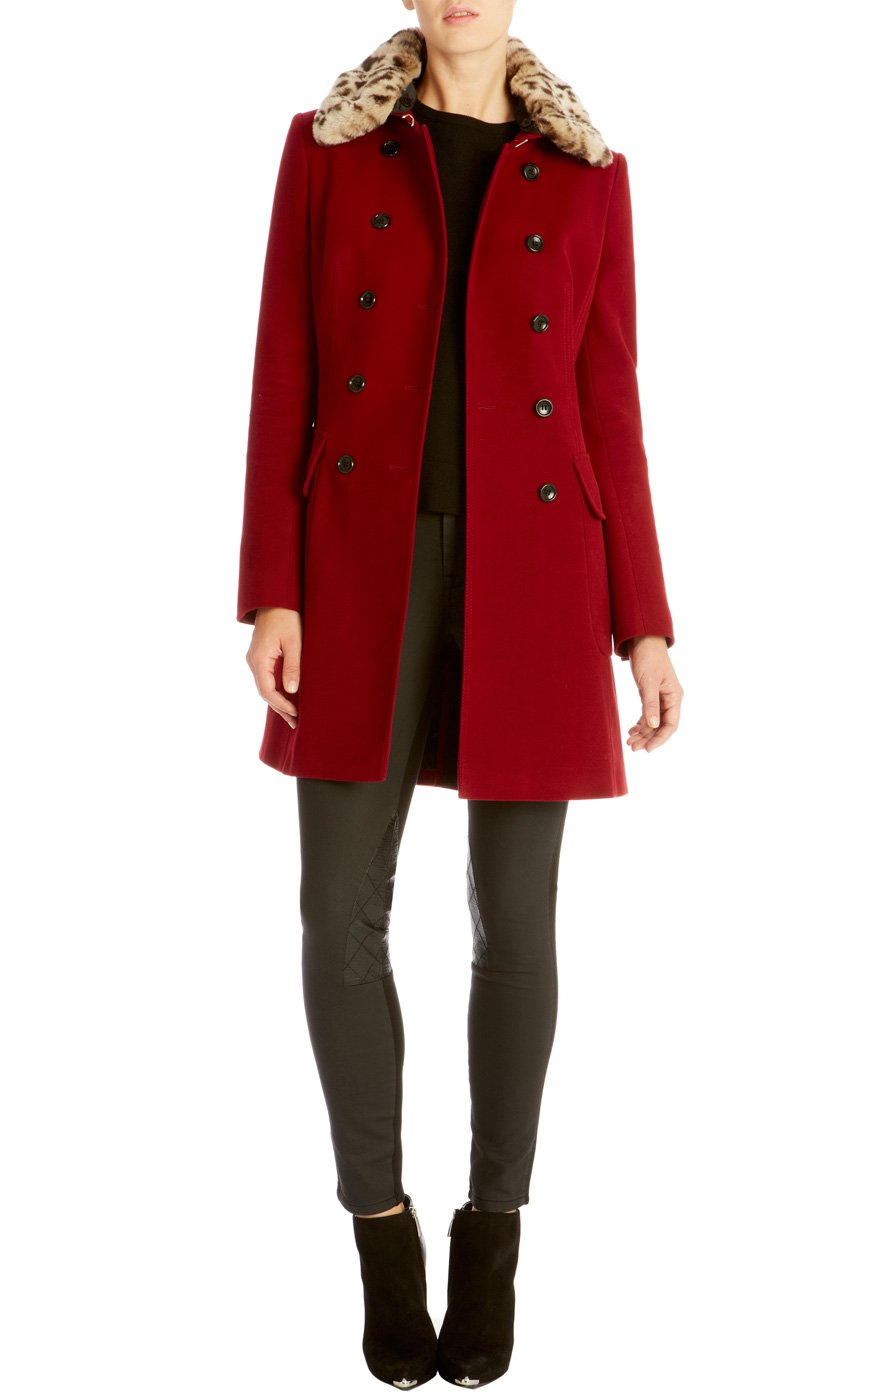 Lyst - Karen millen Moleskin Coat with Faux Fur in Red